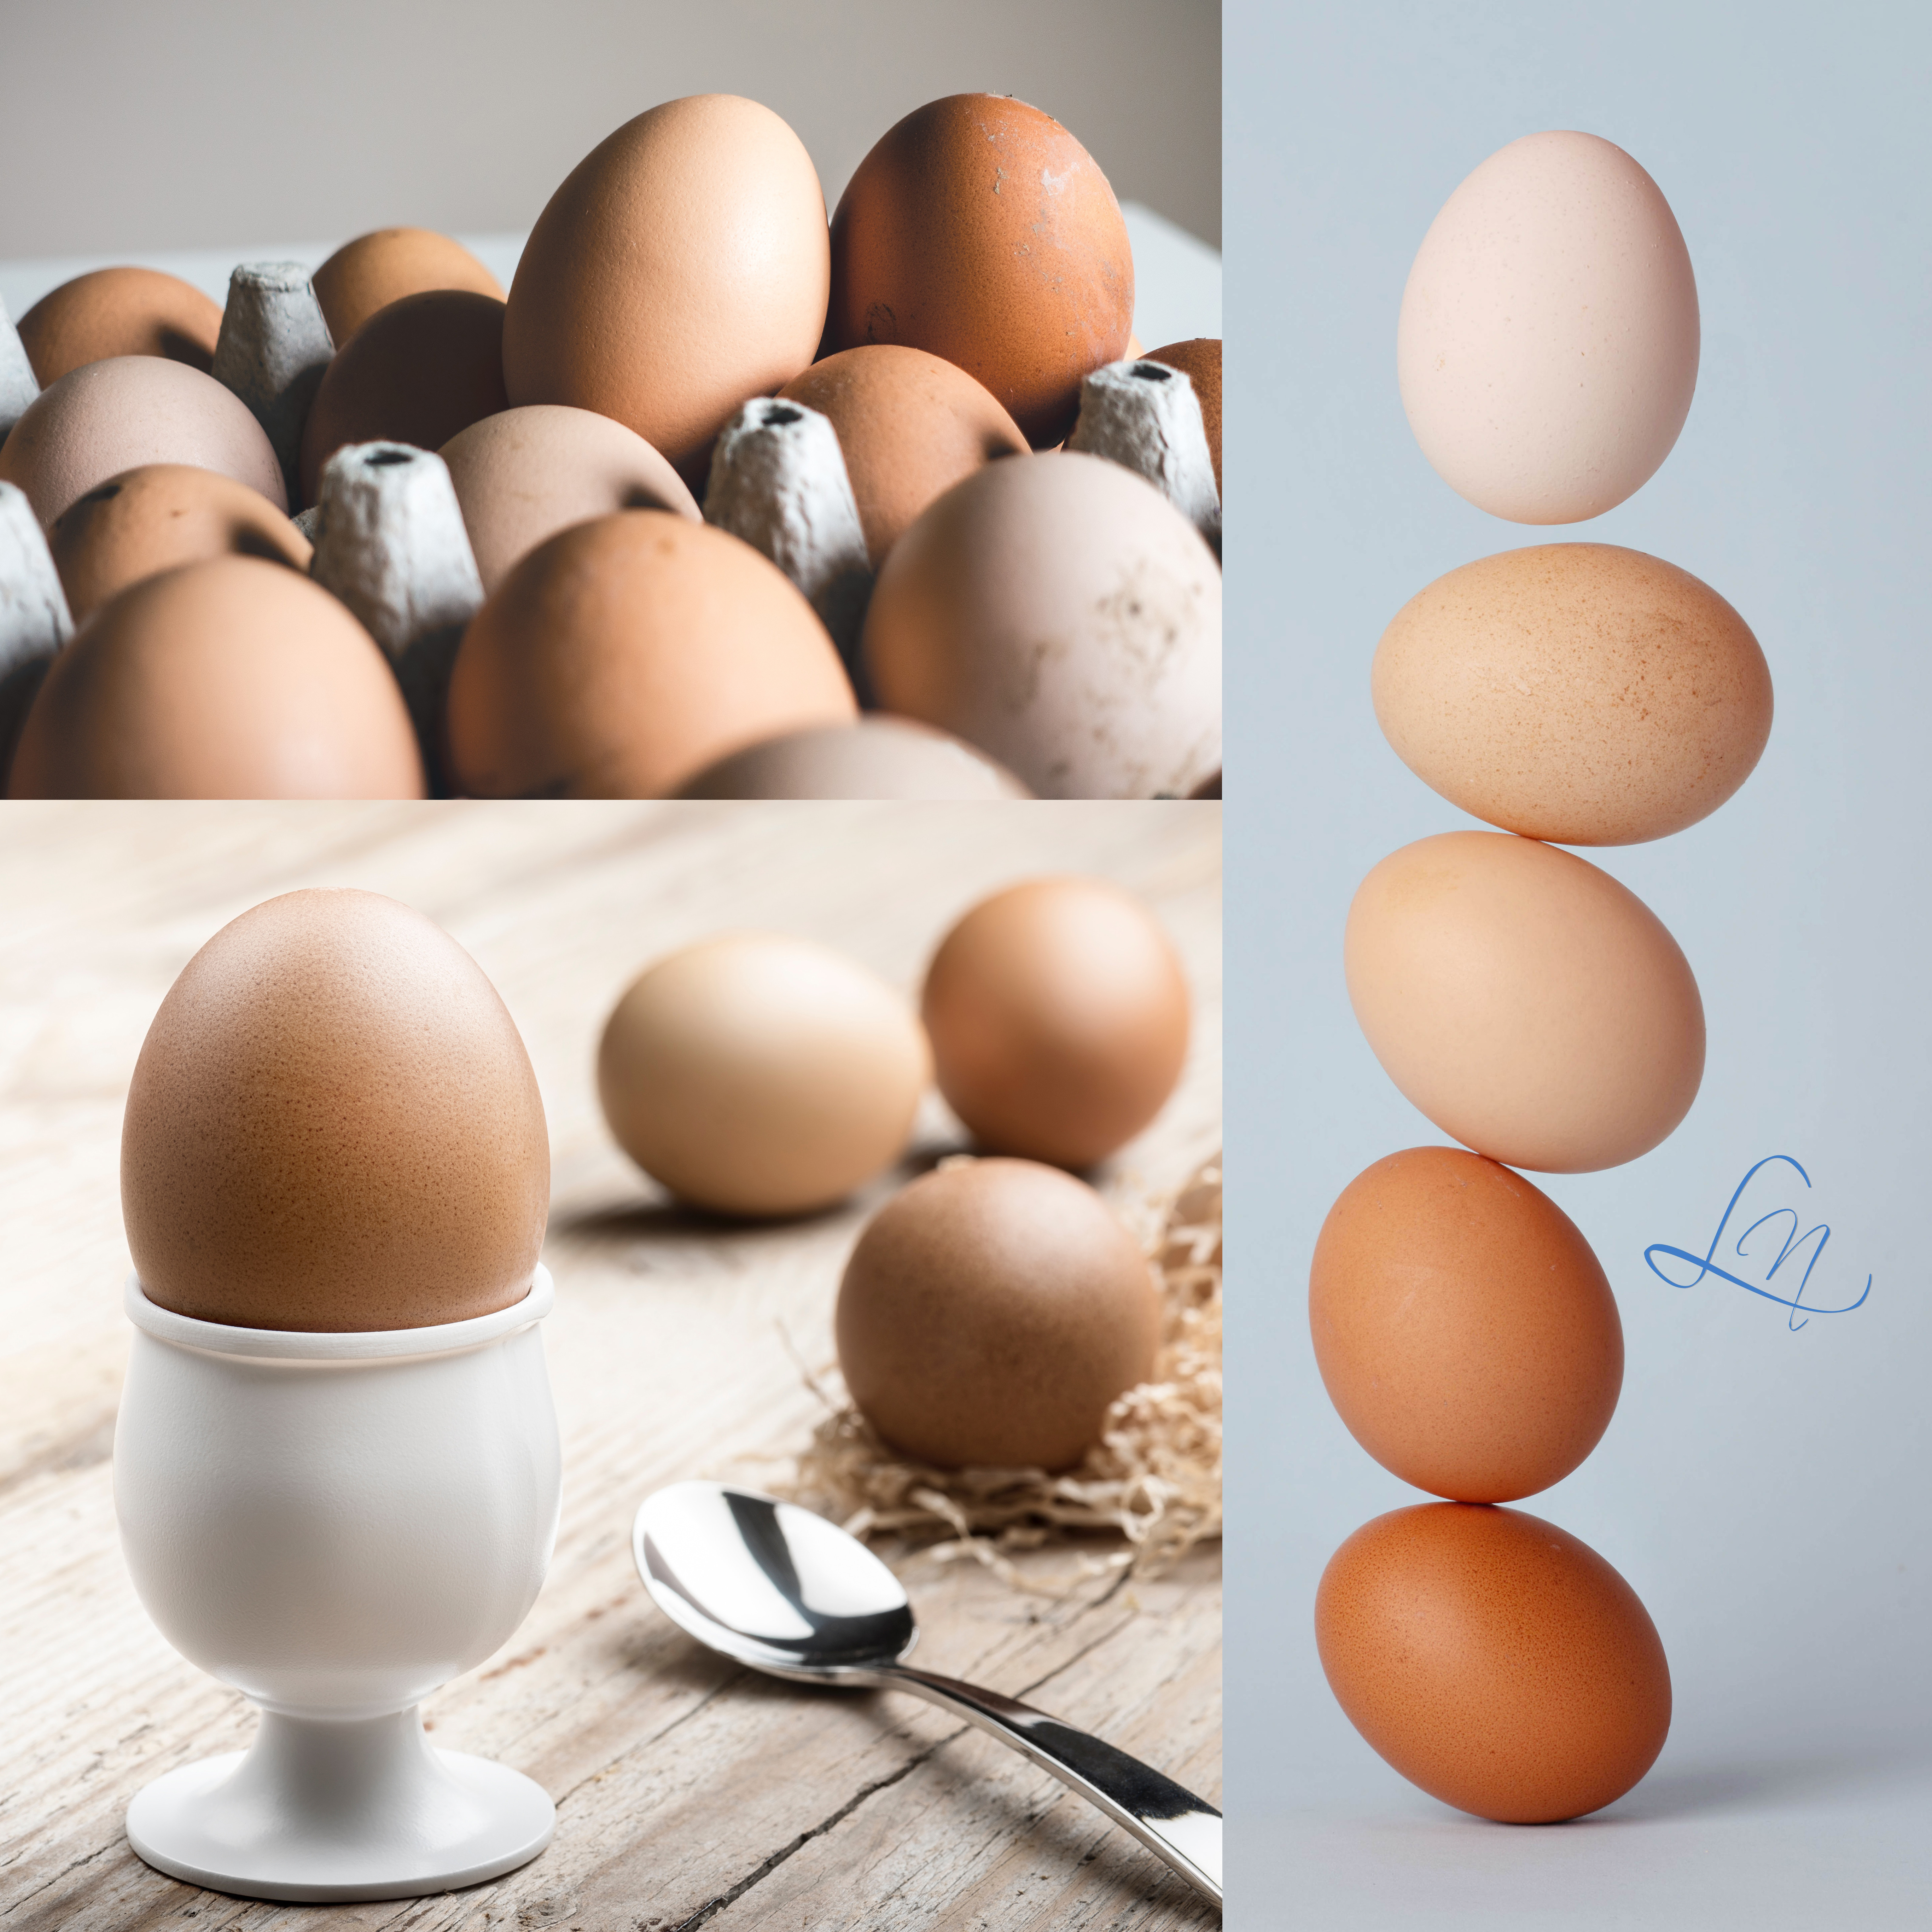 il codice dell'uovo sicurezza alimentare belluno consulenze noacco